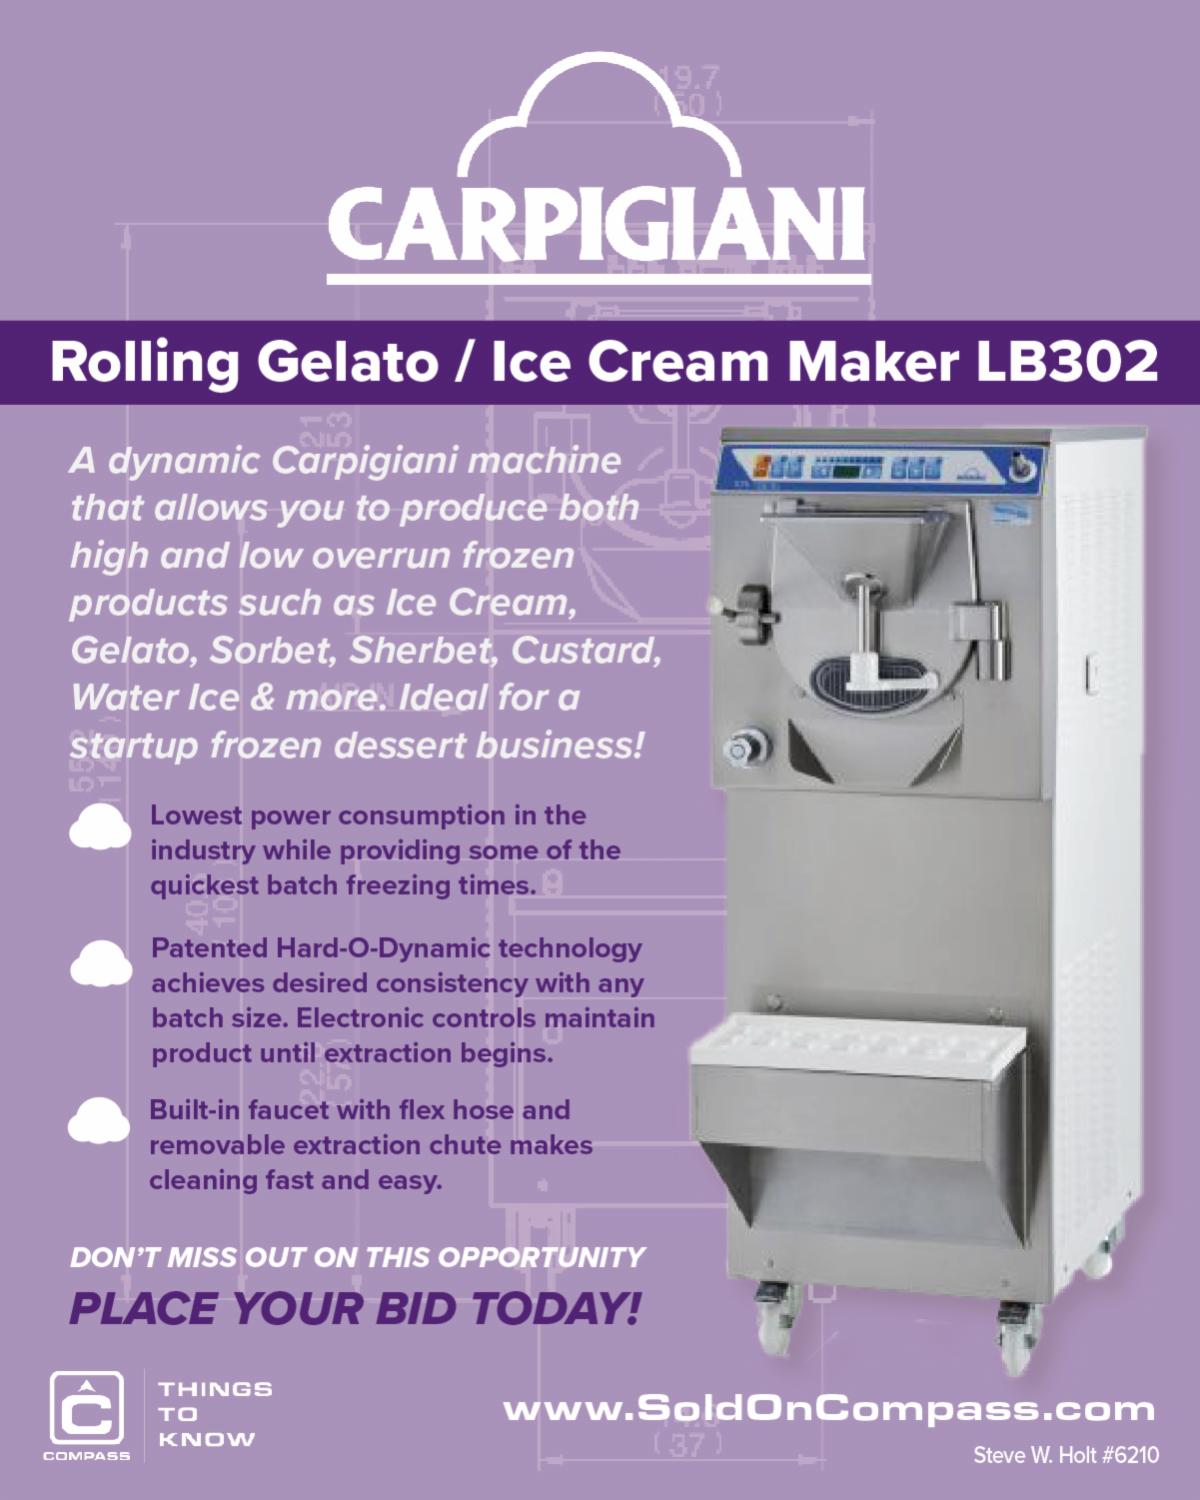 Carpigiani Rolling Gelato / Ice Cream Maker